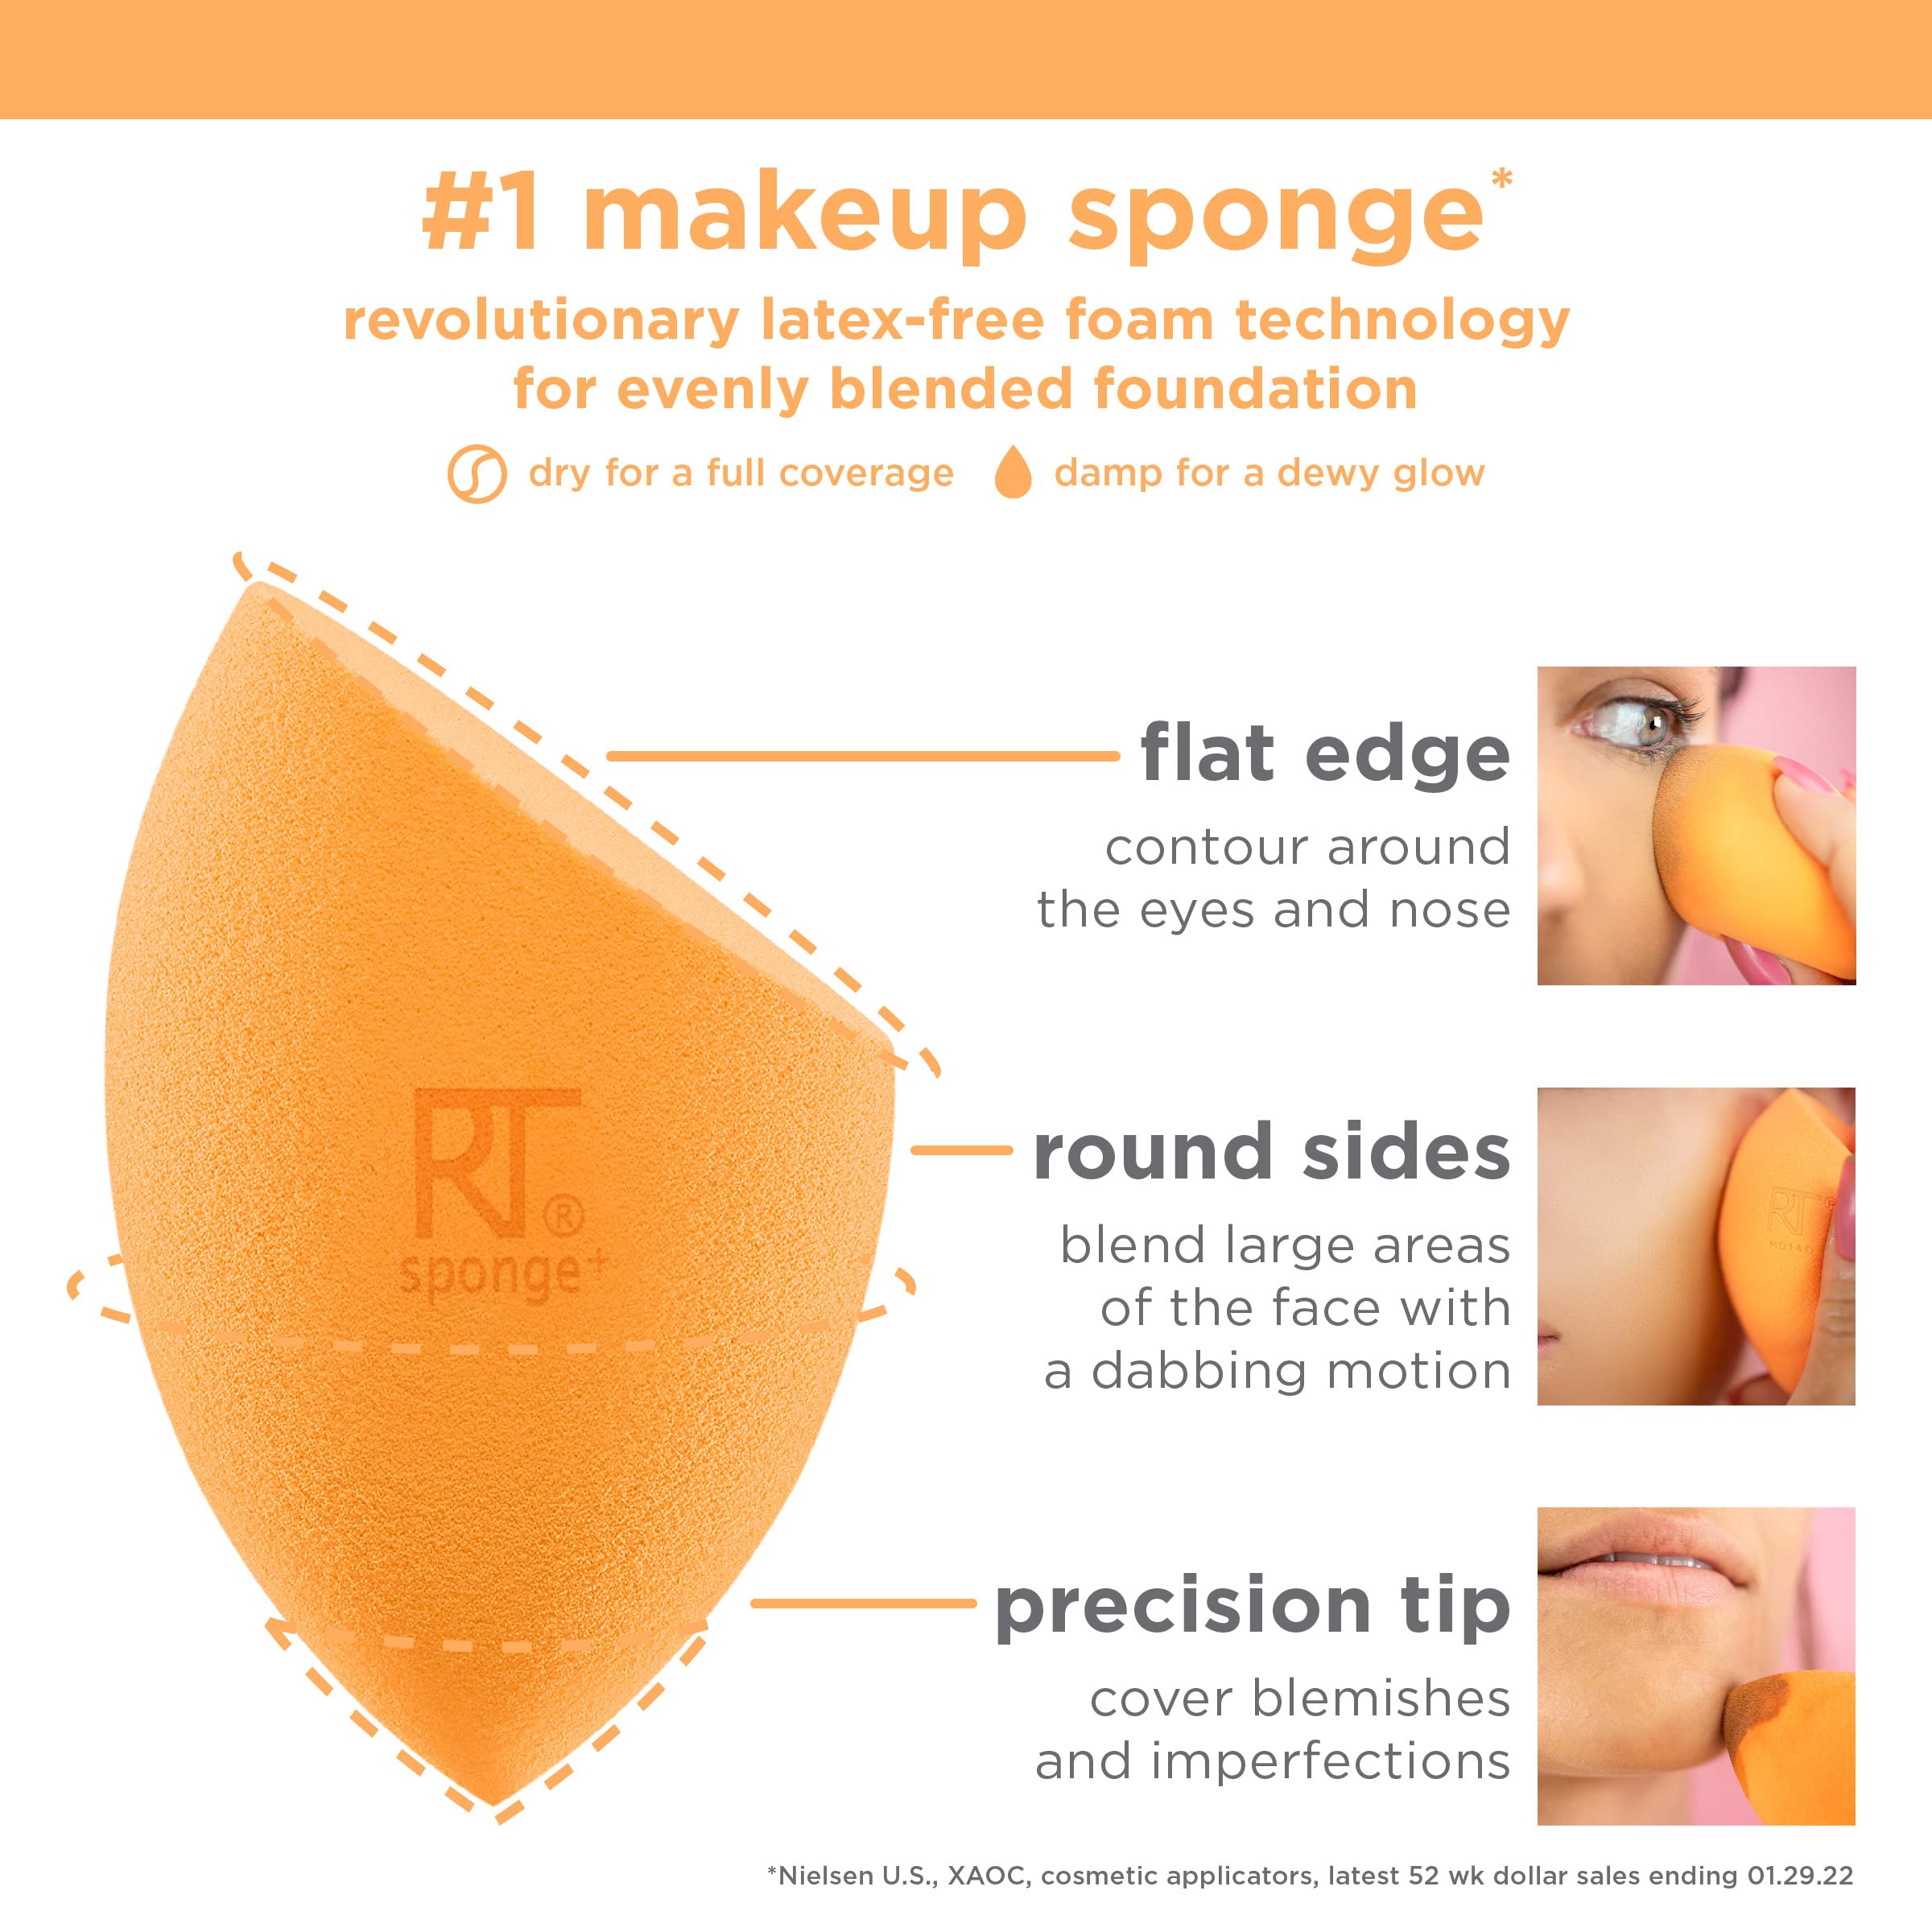 Real Techniques Ultimate Makeup Sponge Trio, Makeup Blending Sponges, For Liquid, Cream, & Powder Products, Powder & Foundation Sponges, Mini Makeup Sponge, Latex-Free Foam, Travel-Friendly, 3 Count